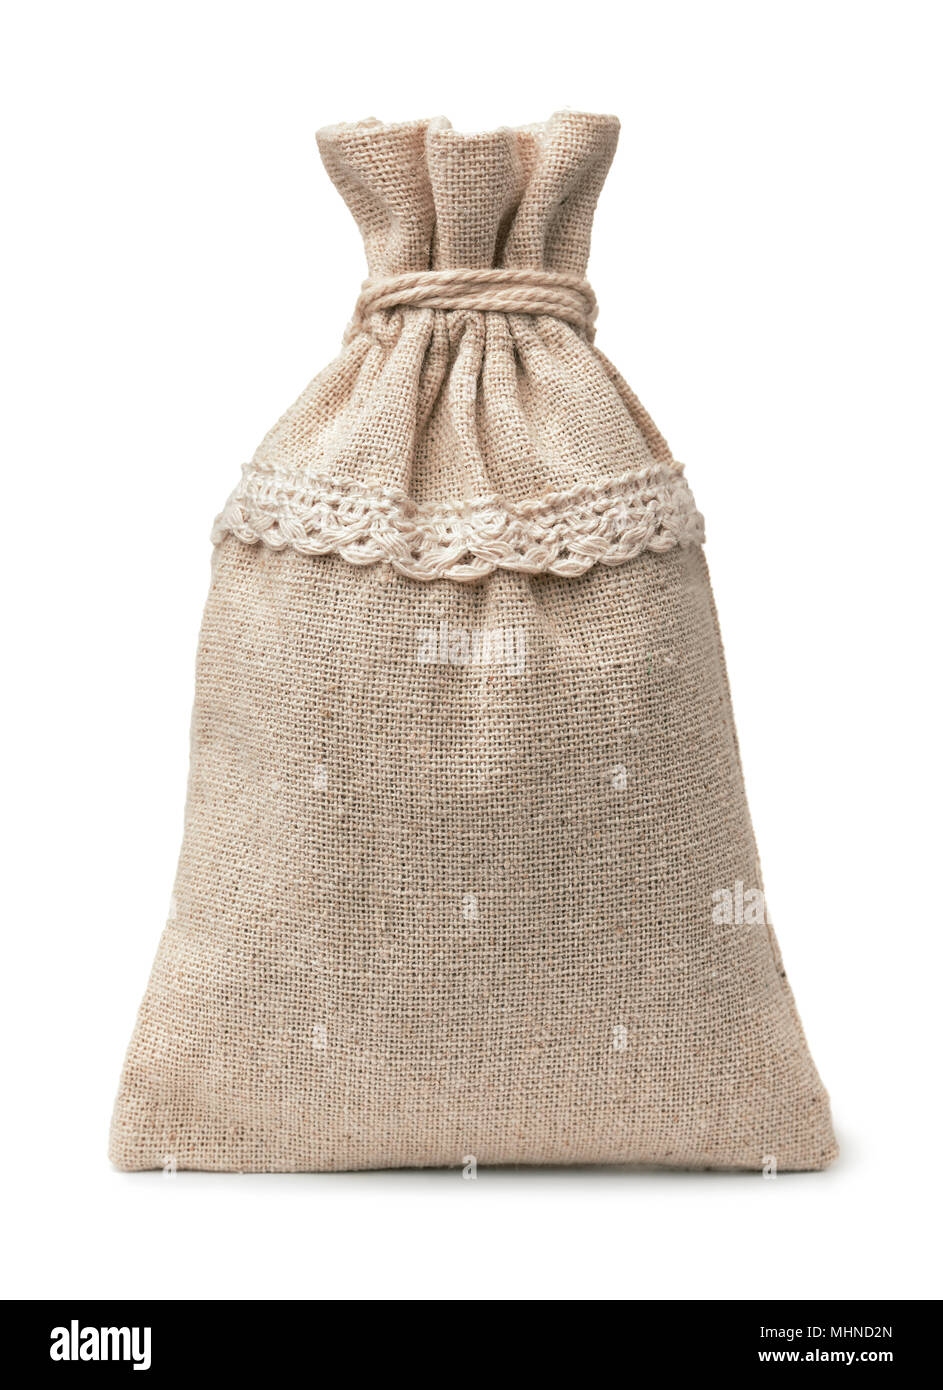 Vista frontal de los pequeños sacos de arpillera en blanco aislado en blanco Foto de stock